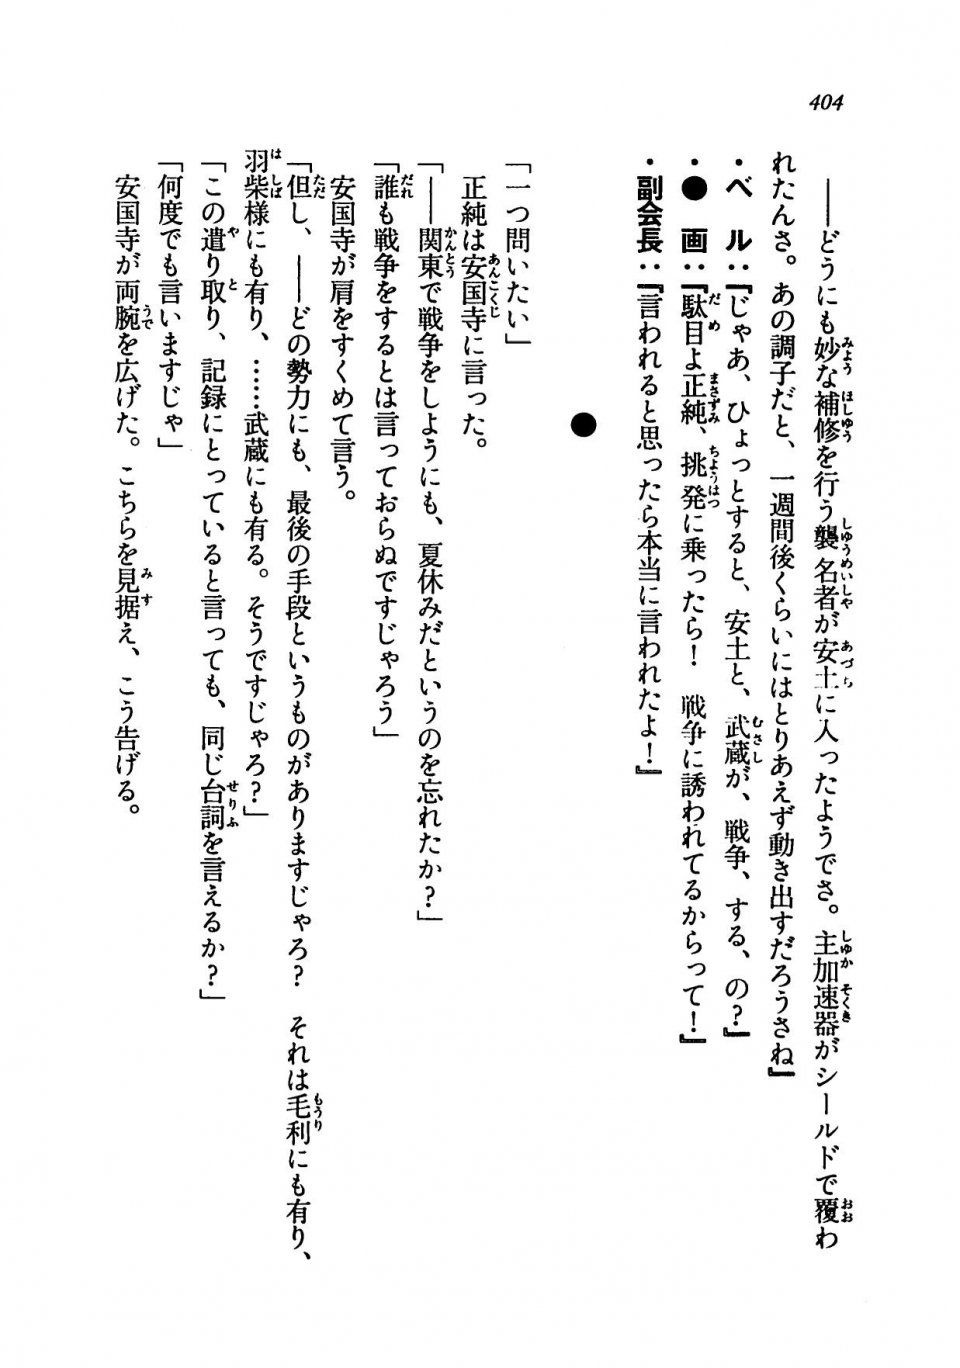 Kyoukai Senjou no Horizon LN Vol 19(8A) - Photo #404